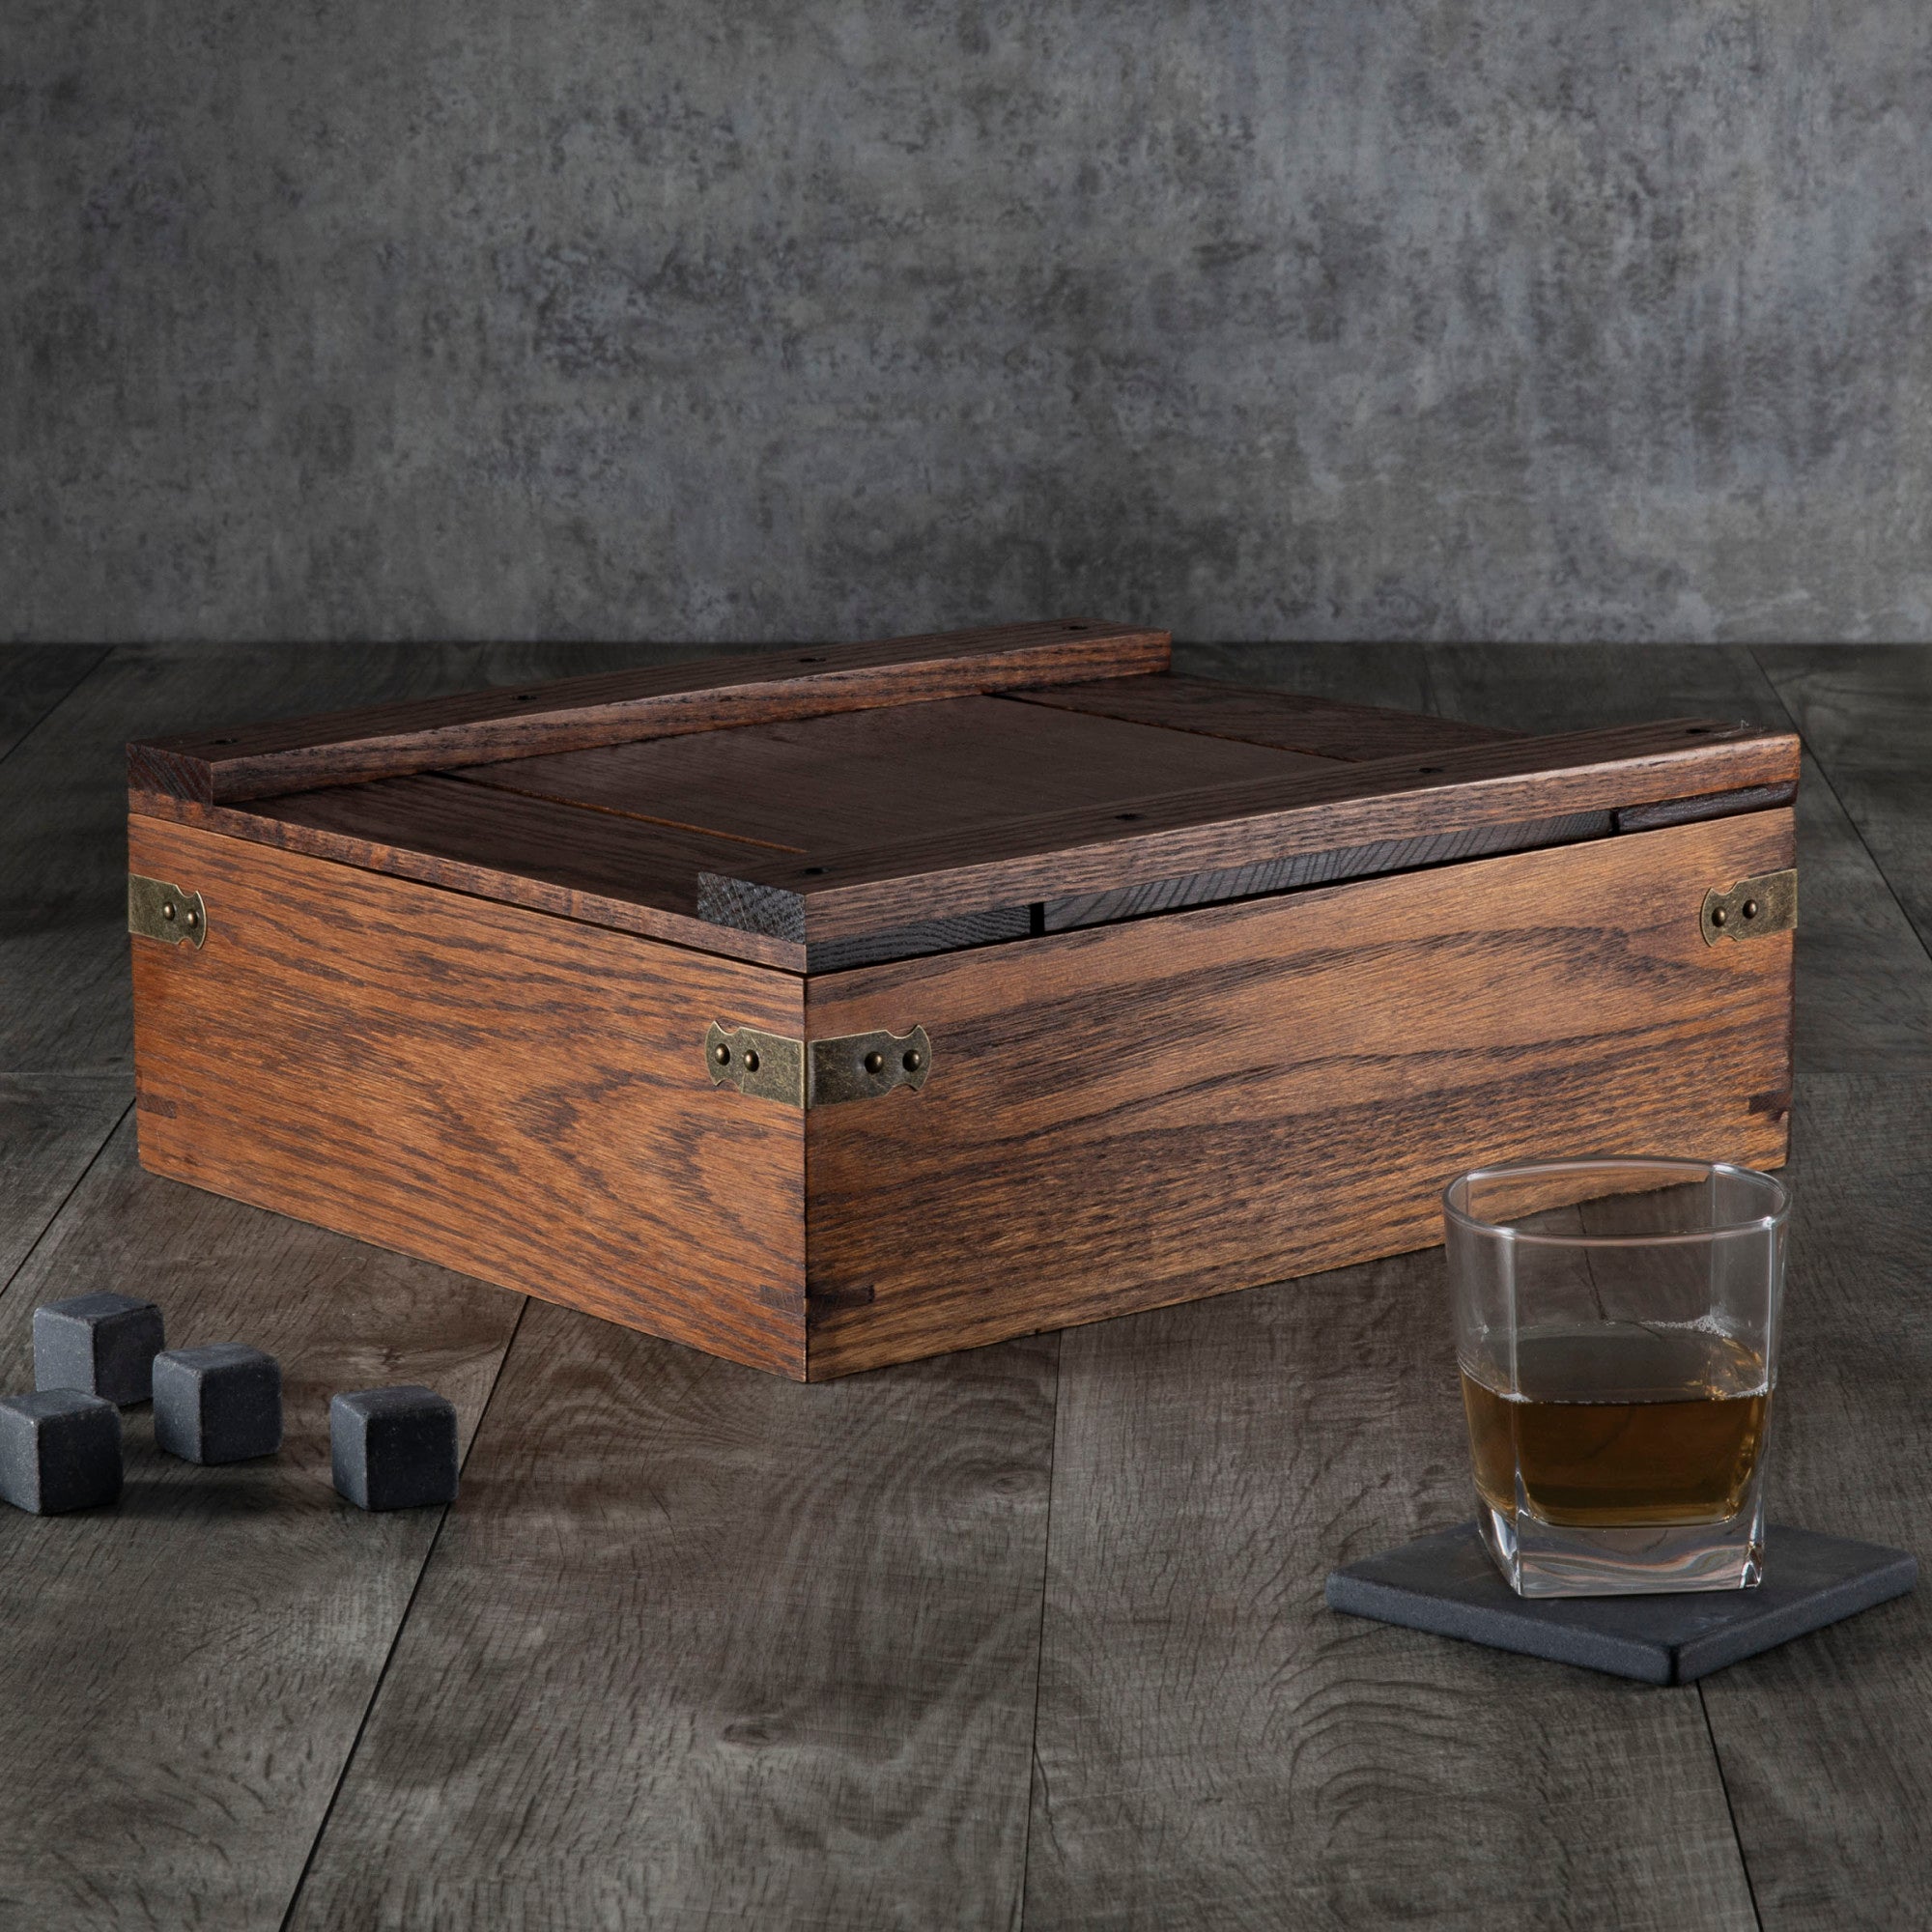 Stanford Cardinal - Whiskey Box Gift Set